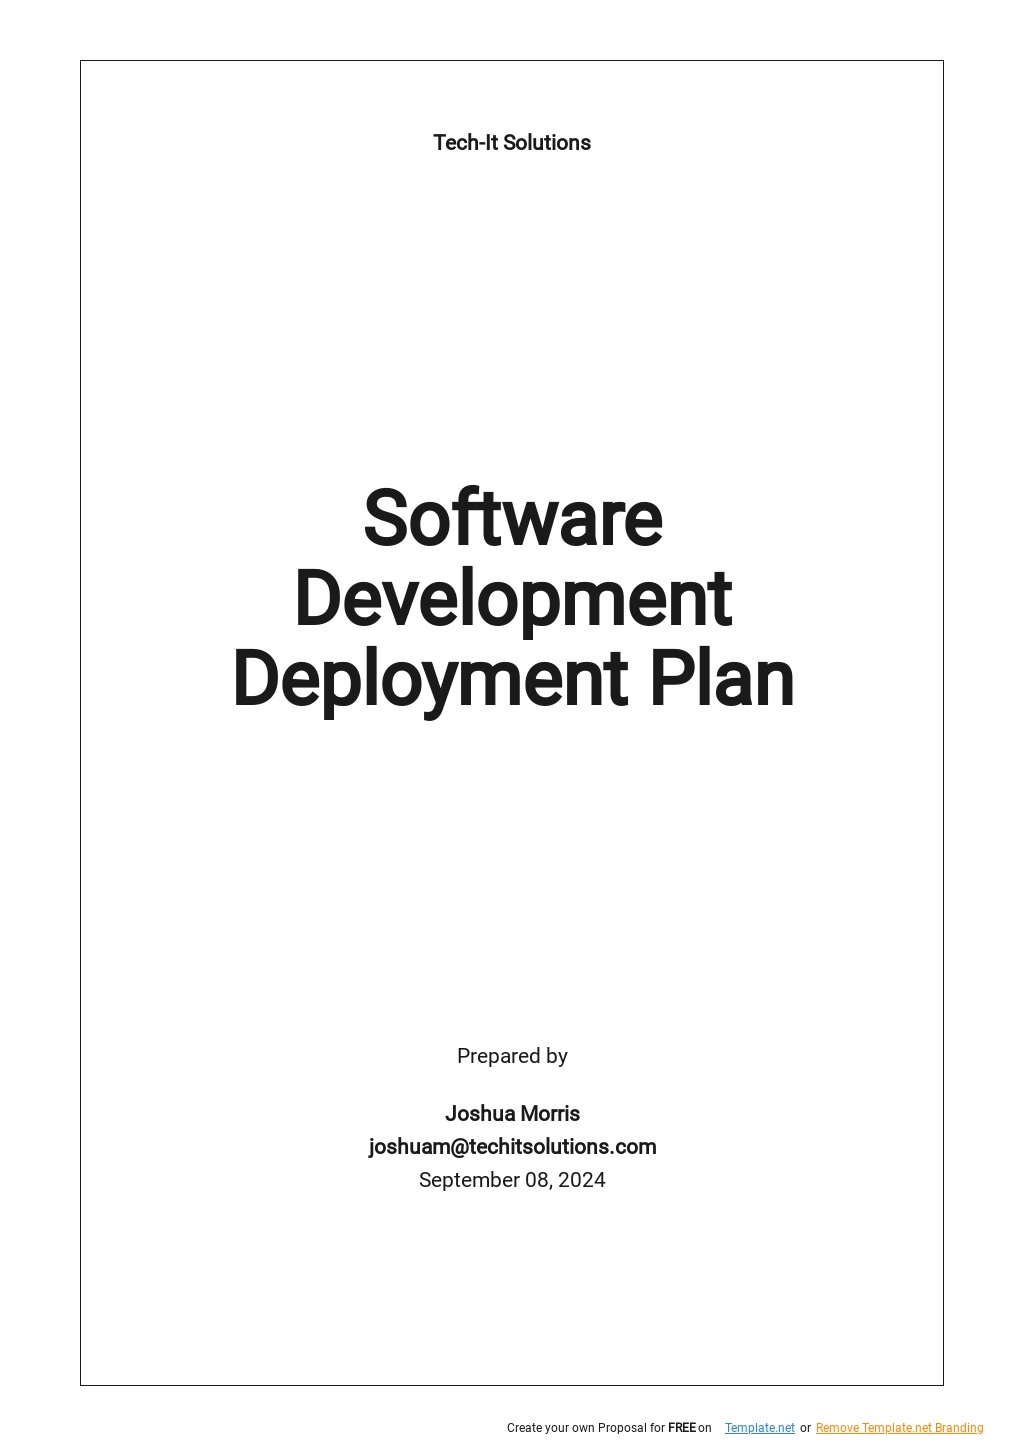 Software Development Deployment Plan Template.jpe